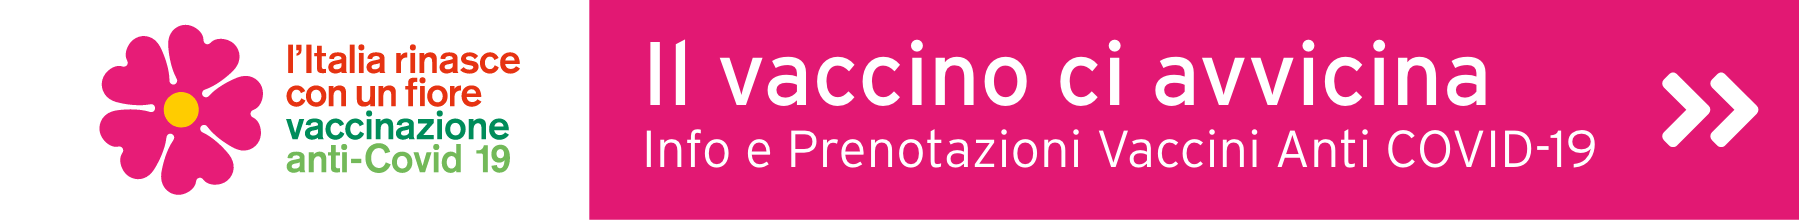 Consulta il sito vaccinocovid.regione.emilia-romagna.it